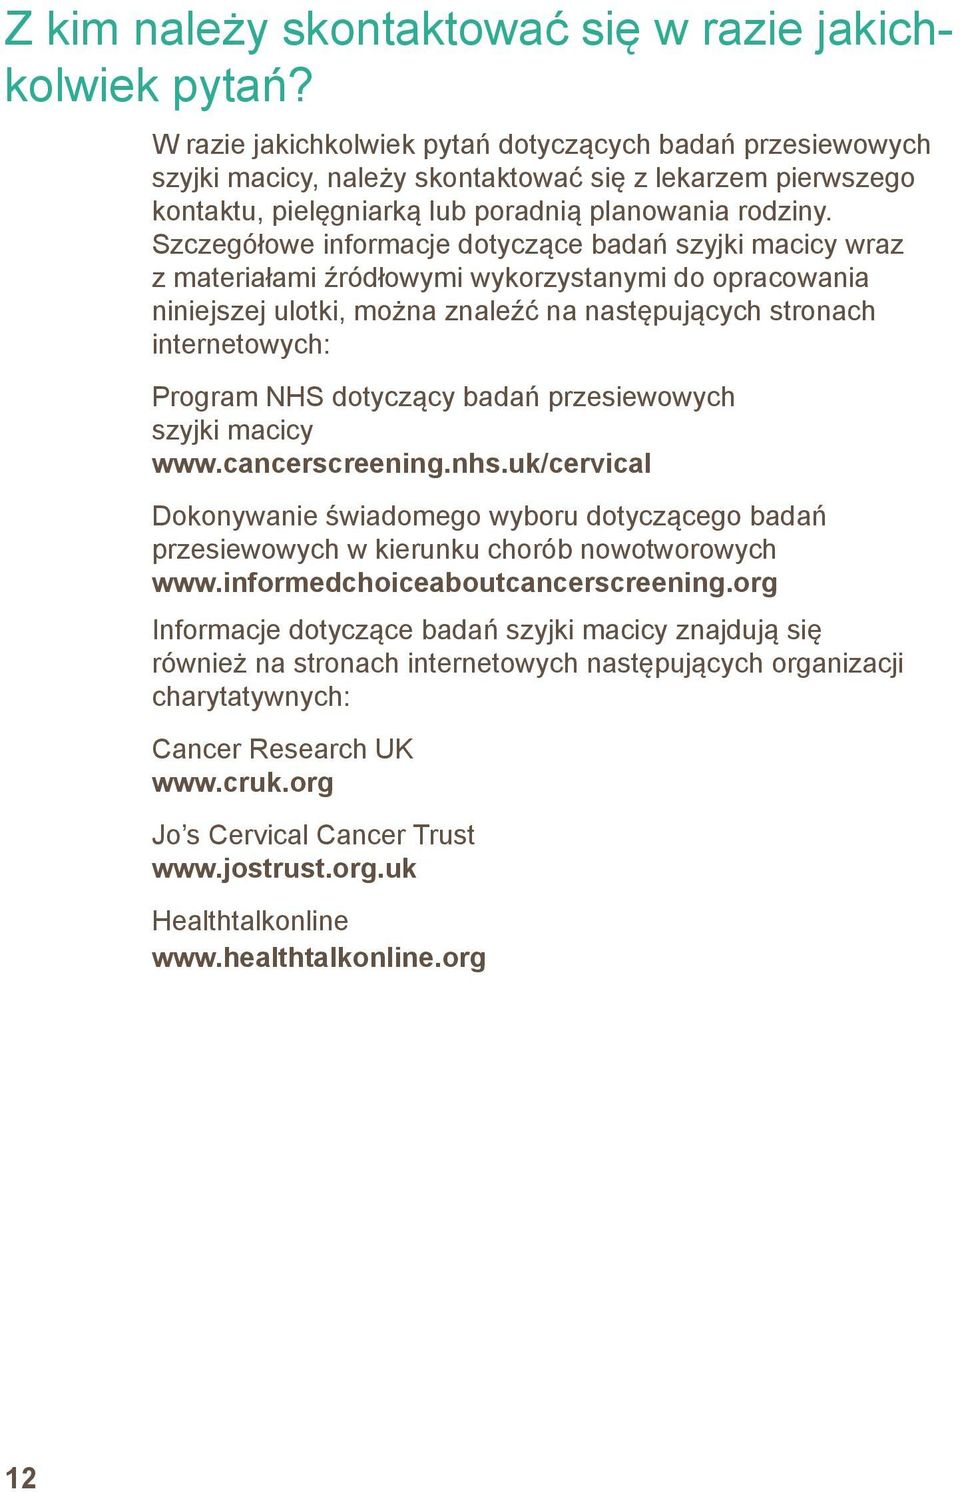 Szczegółowe informacje dotyczące badań szyjki macicy wraz z materiałami źródłowymi wykorzystanymi do opracowania niniejszej ulotki, można znaleźć na następujących stronach internetowych: Program NHS